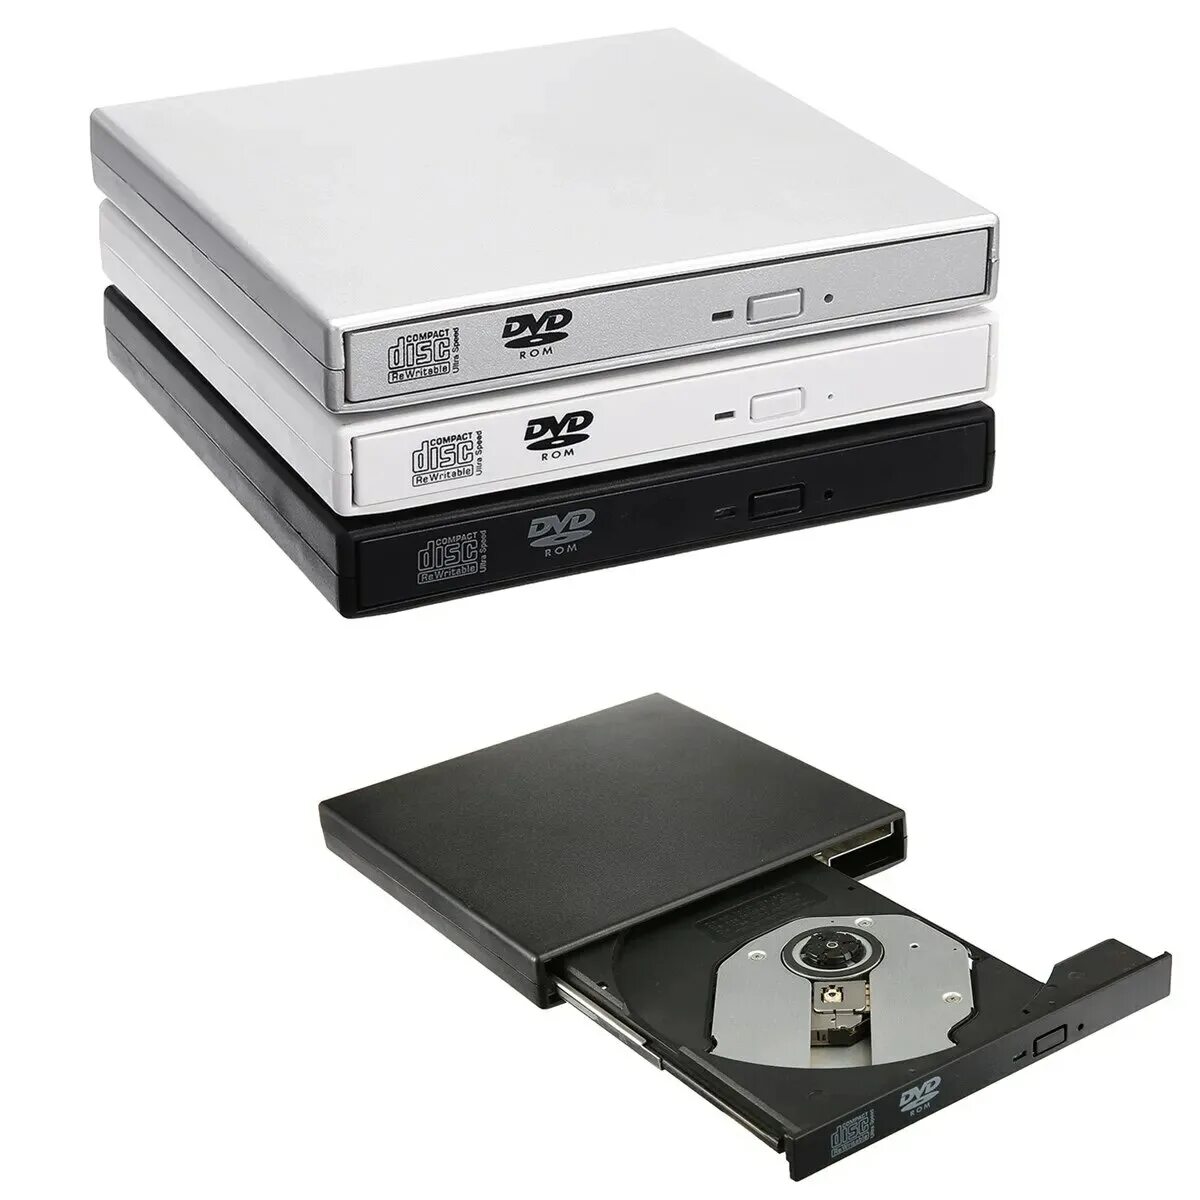 USB внешний CD RW привод. CD-ROM/RW, DVD-ROM/RW. Внешний DVD-RW привод (USB). Юсб двд Ром.